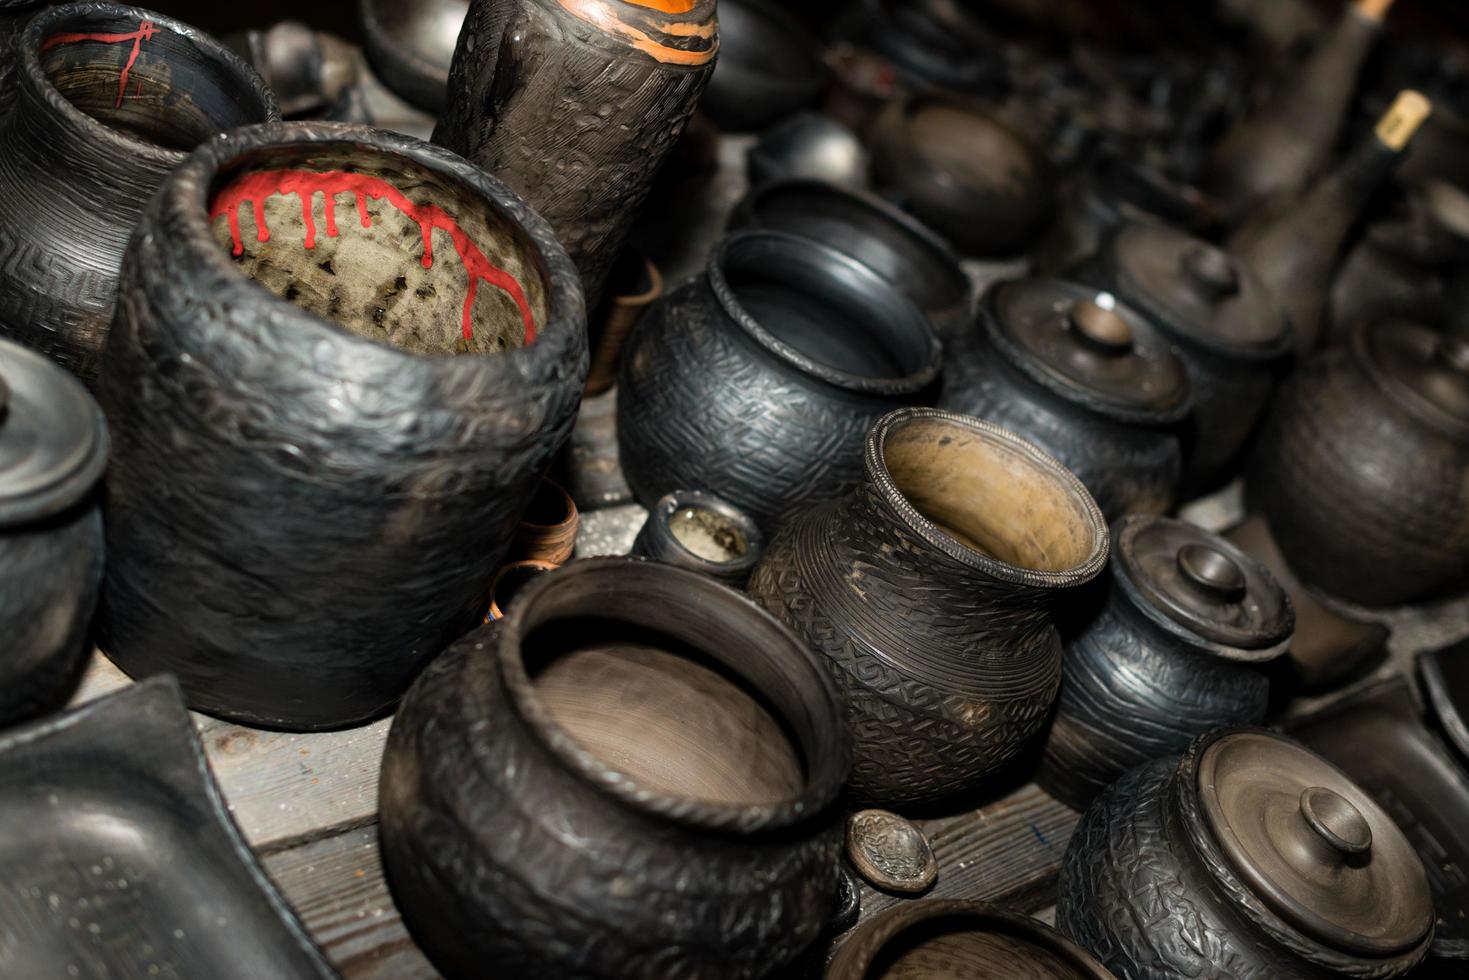 cerâmica preta queimada. potes e pratos de barro queimado - imagem foto